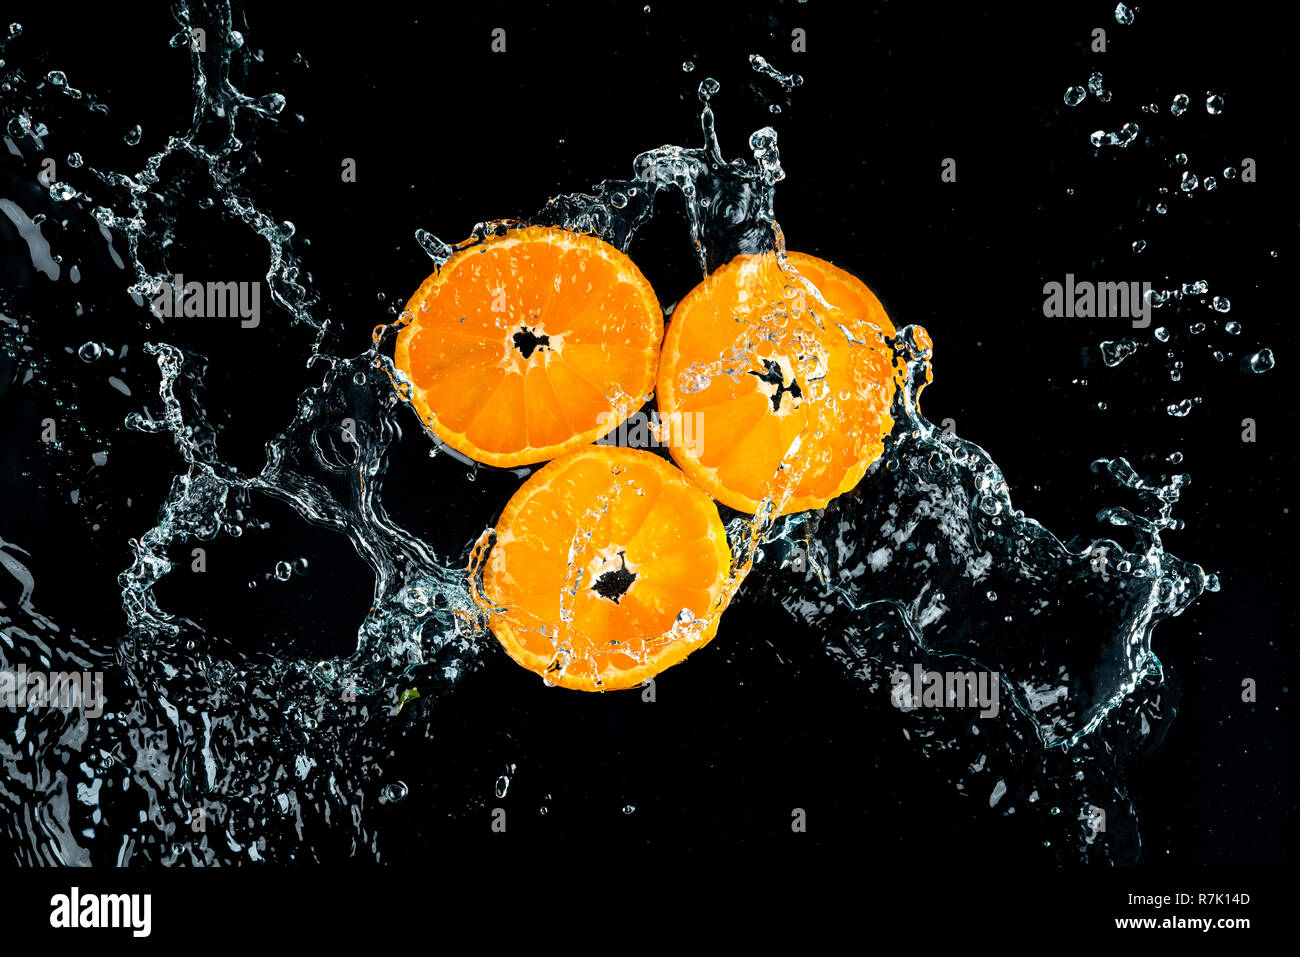 Les oranges, les éclaboussures d'eau sur fond noir Banque D'Images